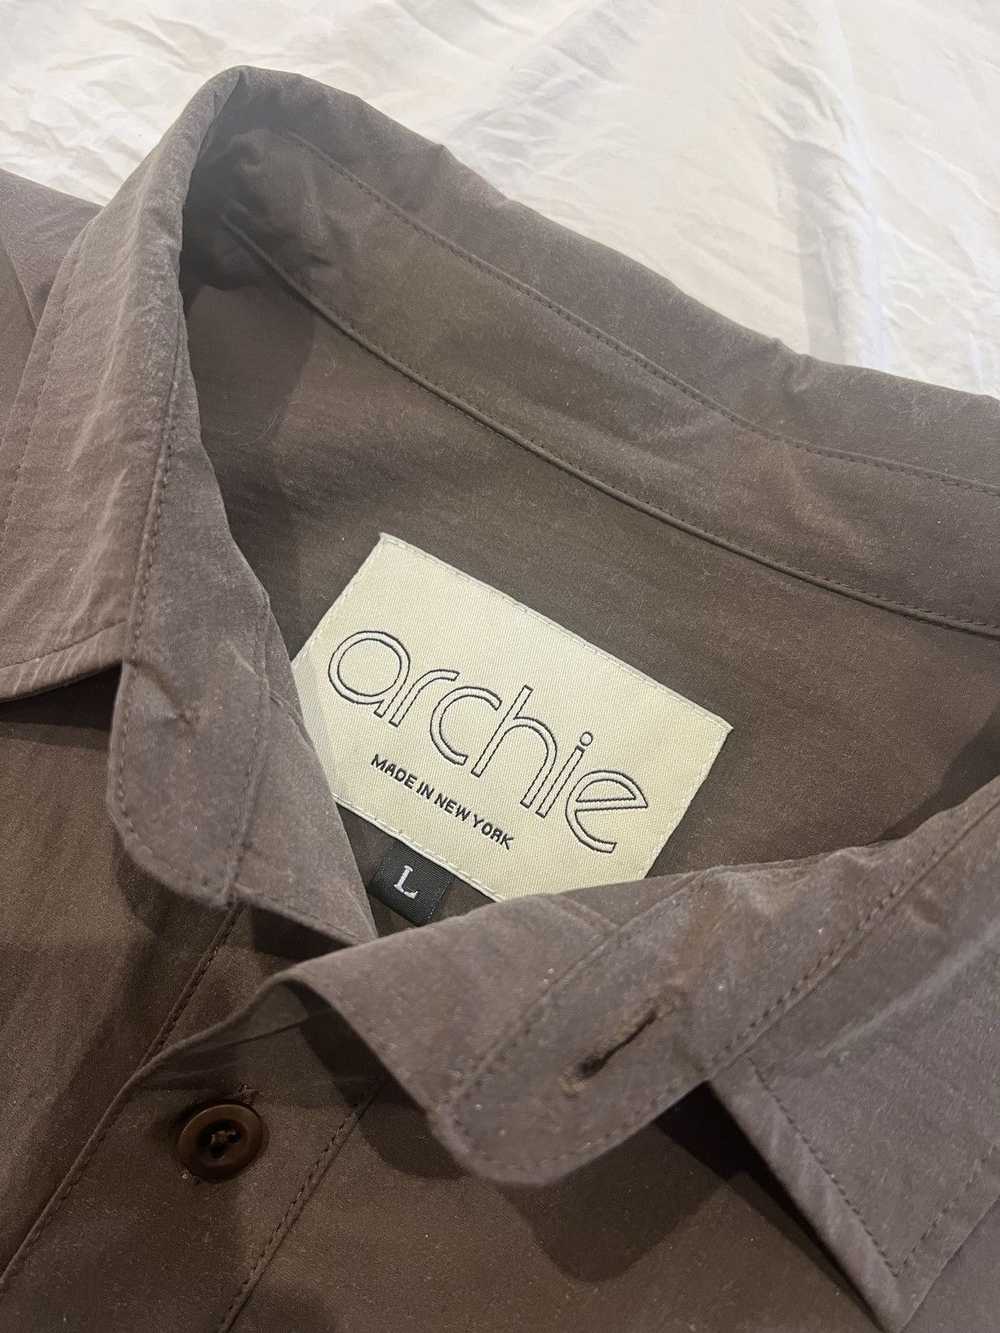 Archie Mackinaw Nylon Shirt - image 3